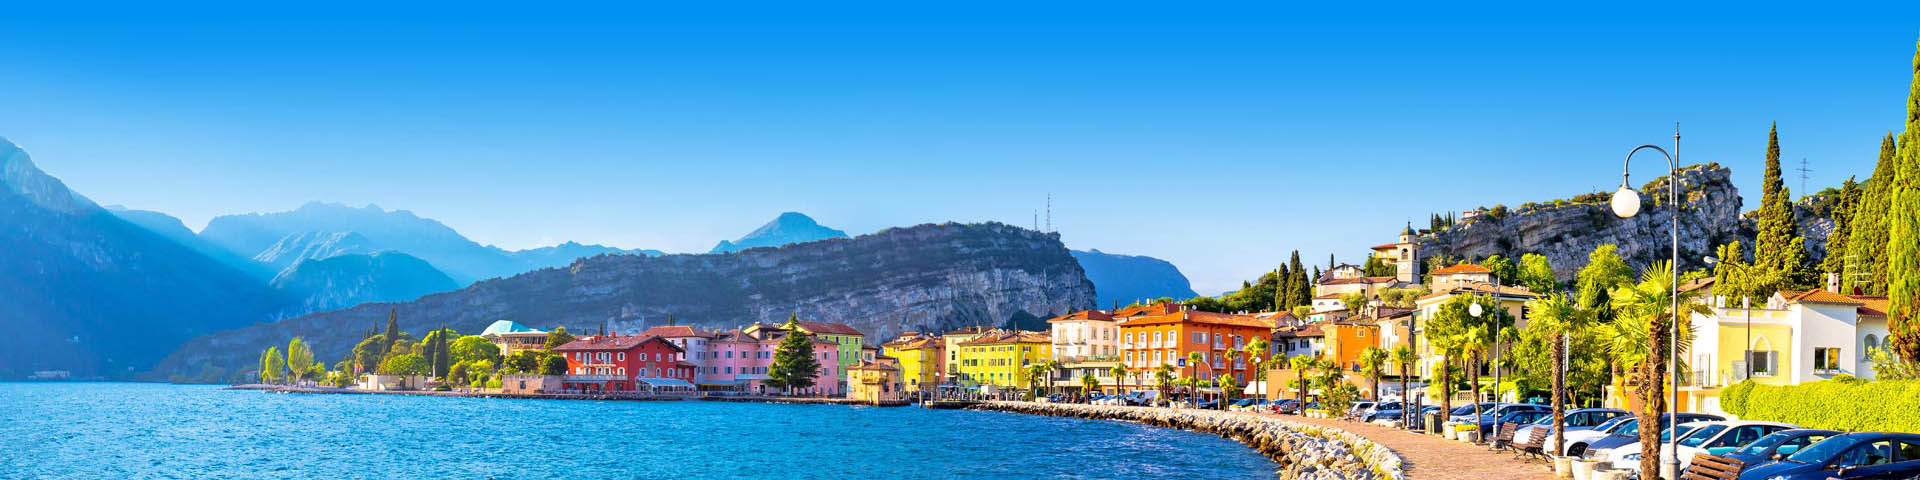 Boulevard van kleurrijke stad van Torbole aan het Lago di Garda meer, Italië